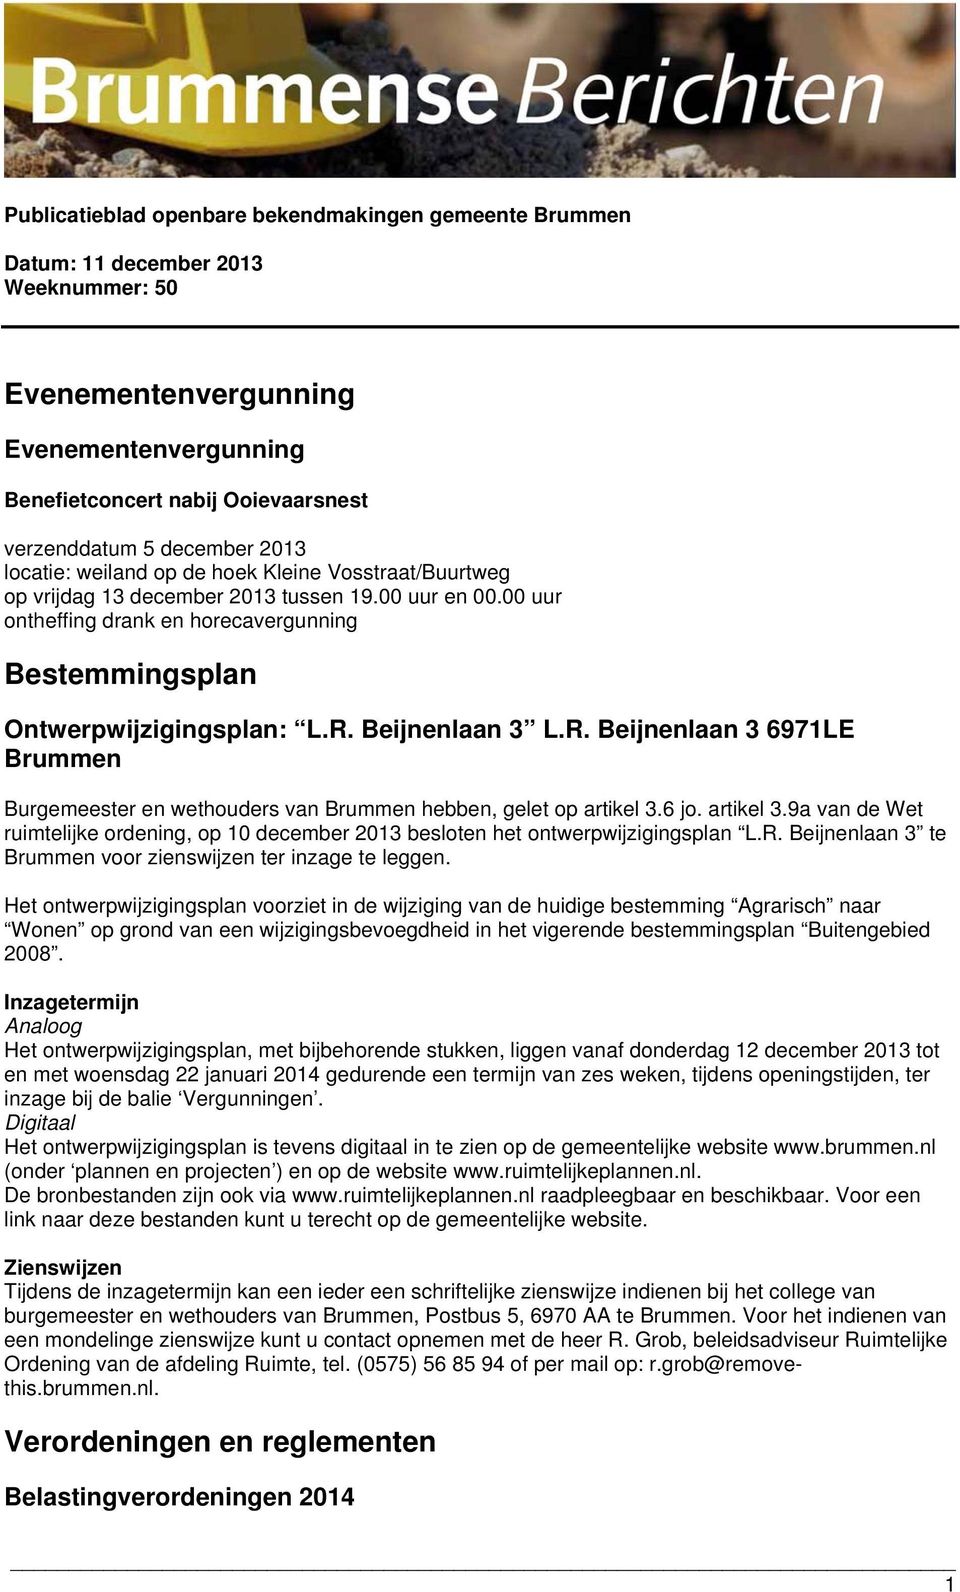 6 jo. artikel 3.9a van de Wet ruimtelijke ordening, op 10 december 2013 besloten het ontwerpwijzigingsplan L.R. Beijnenlaan 3 te Brummen voor zienswijzen ter inzage te leggen.